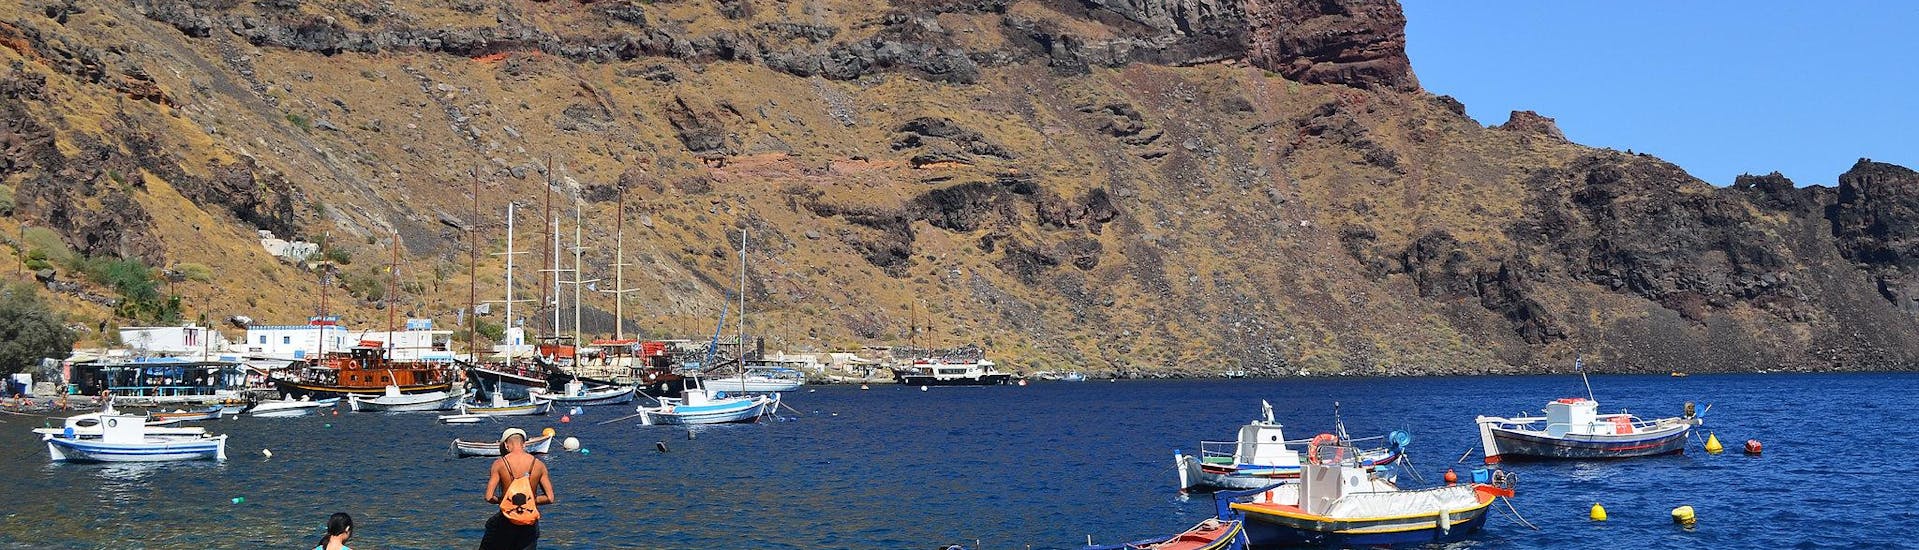 Mehrere Boote in Küstennähe während einer Bootstour zur Insel Therasia.